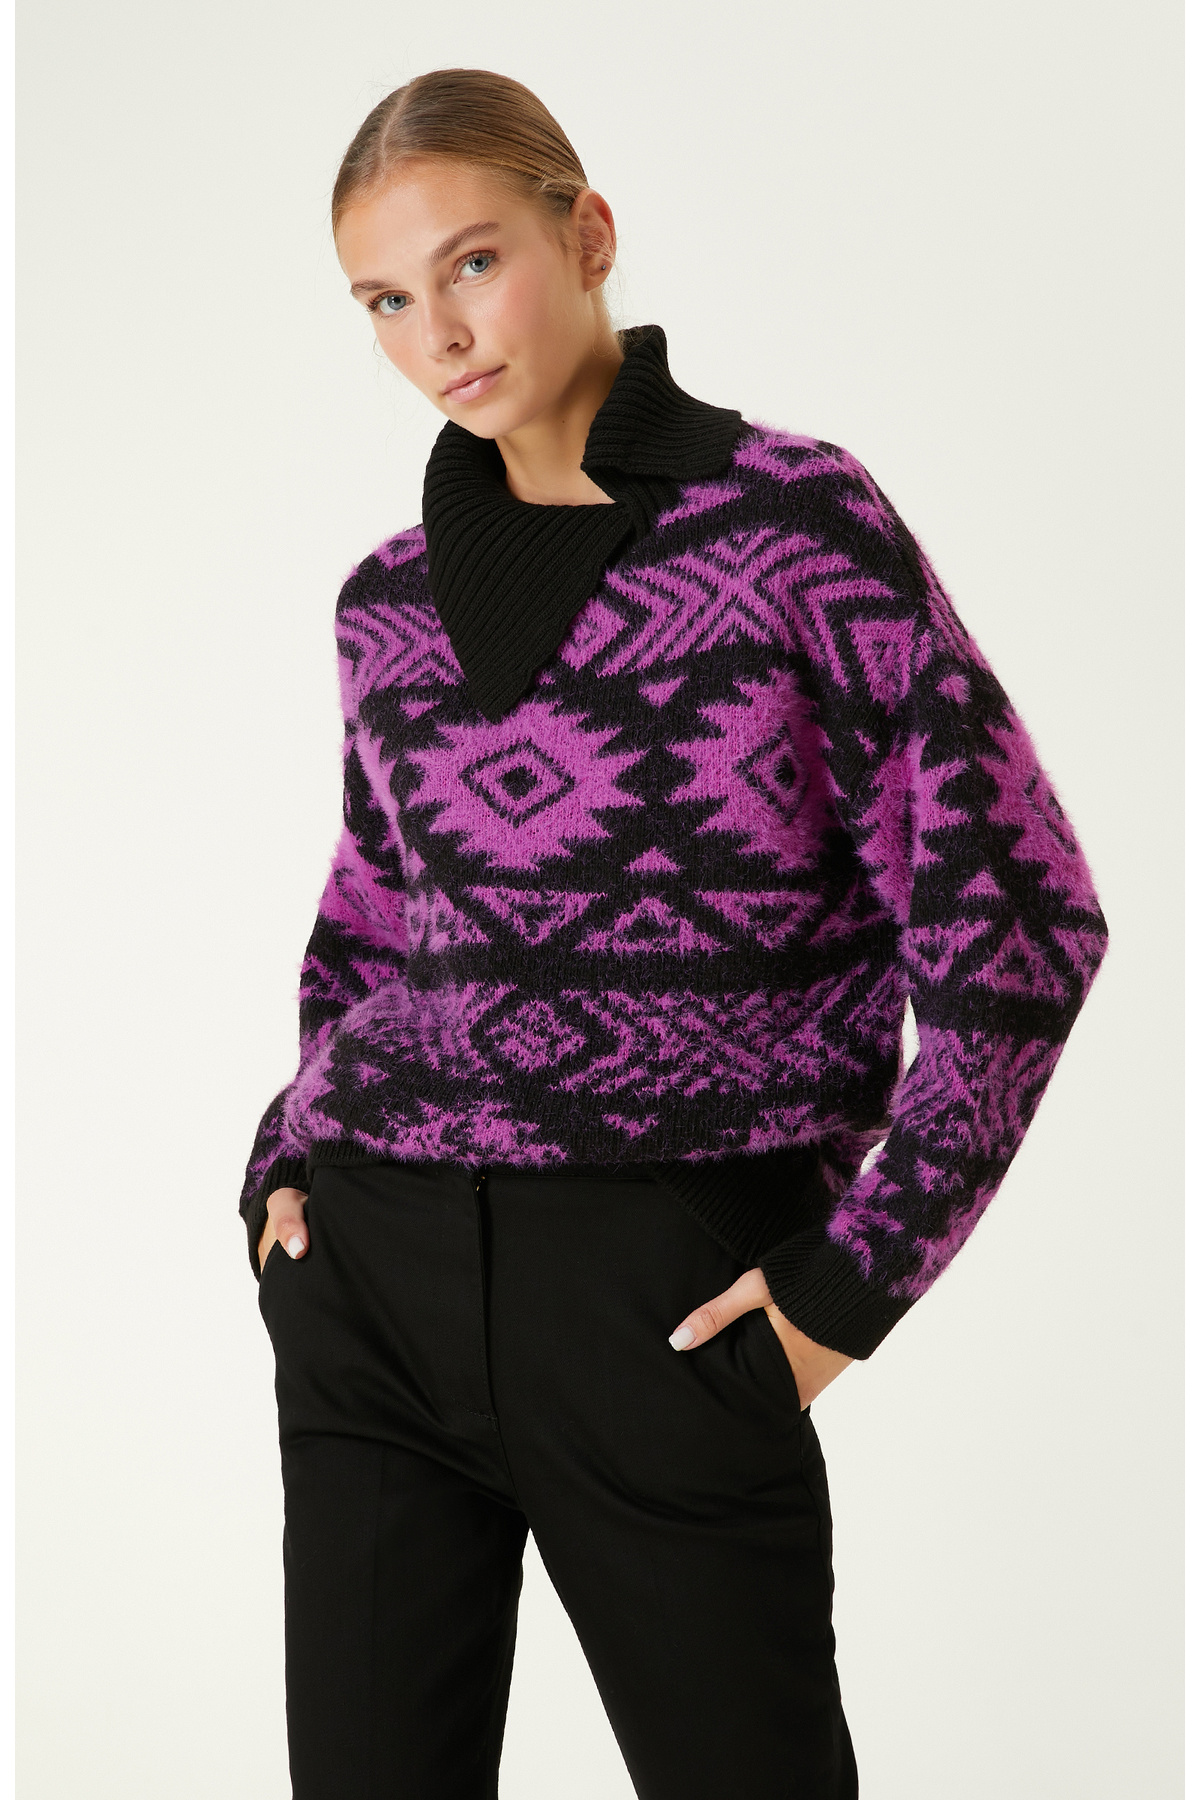 Черный трикотажный свитер цвета фуксии с этническим узором Network, черный